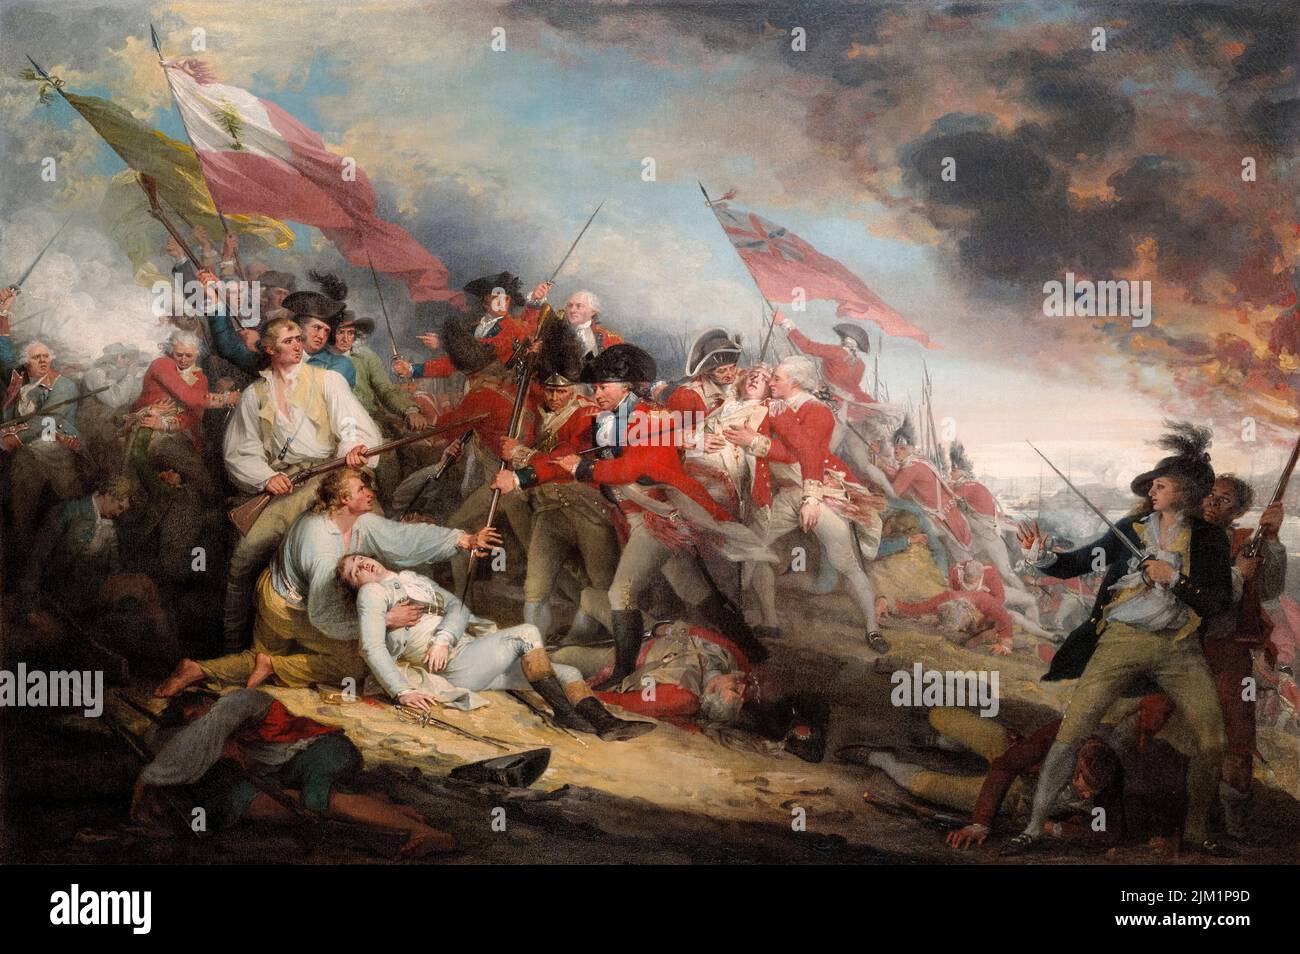 La Batalla de Bunker’s Hill, junio de 17th 1775, pintura al óleo sobre lienzo de John Trumbull, 1786 Foto de stock